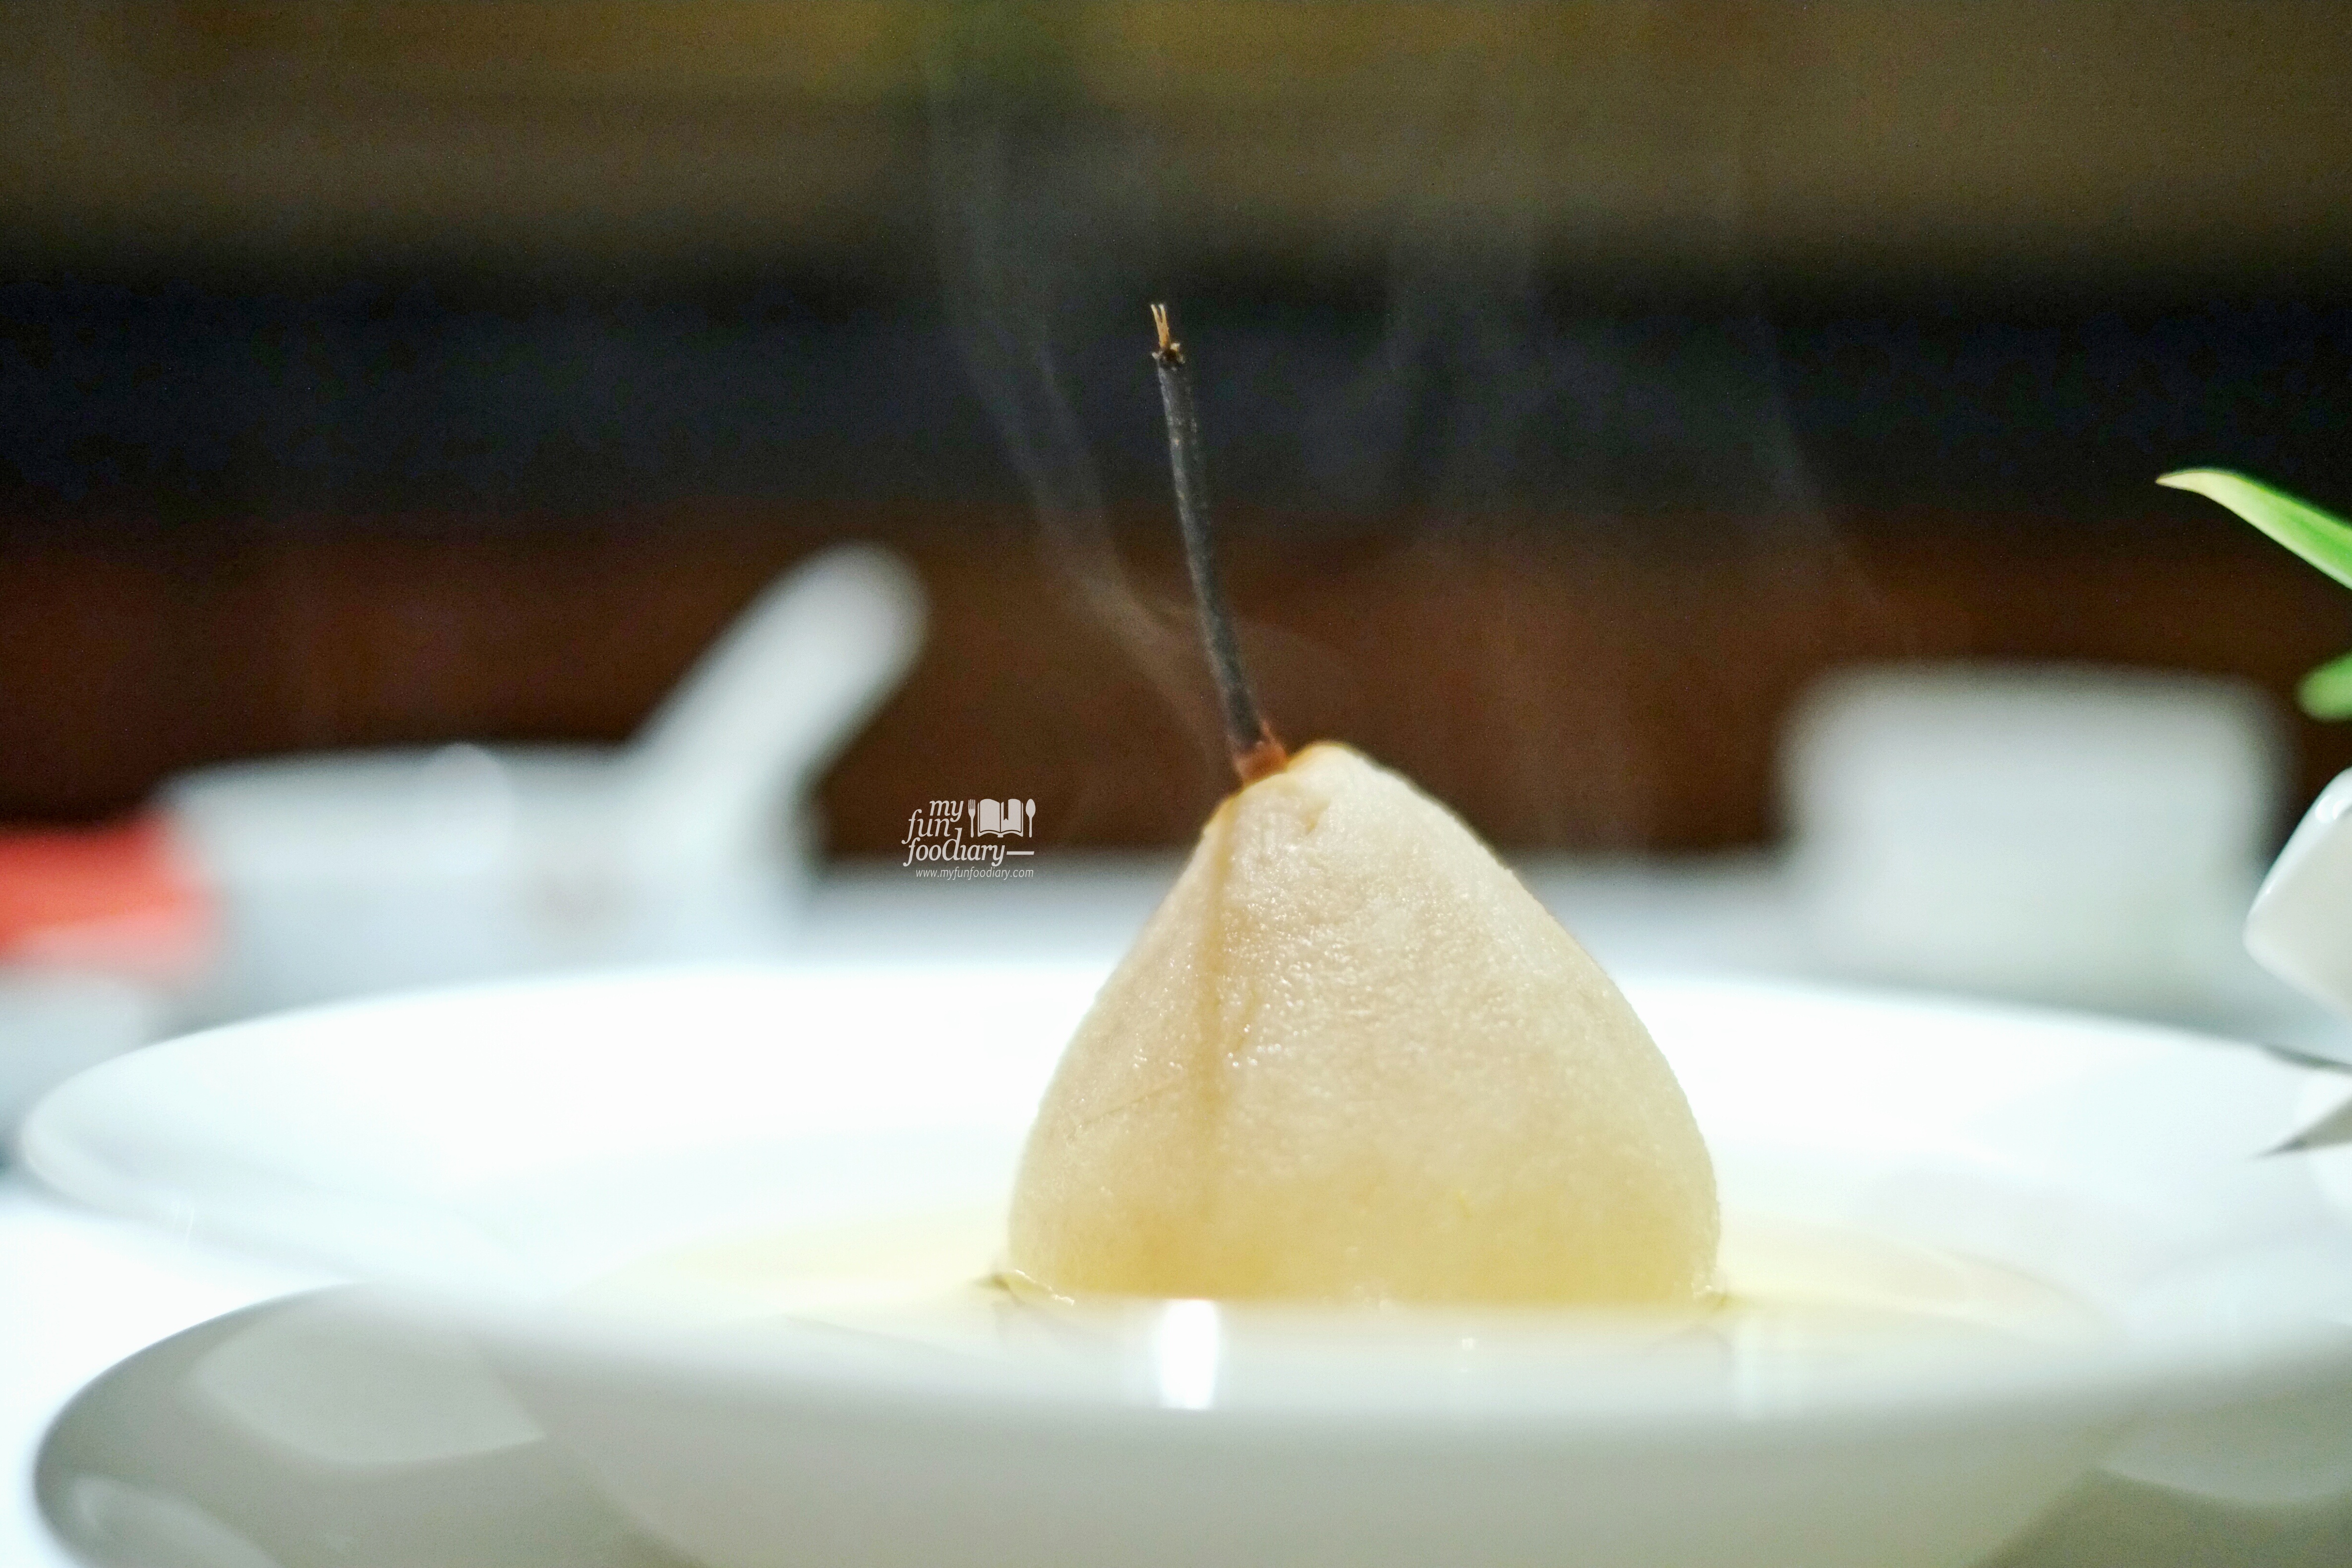 Boiled Pear at Shang Palace Shangrila Surabaya by Myfunfoodiary